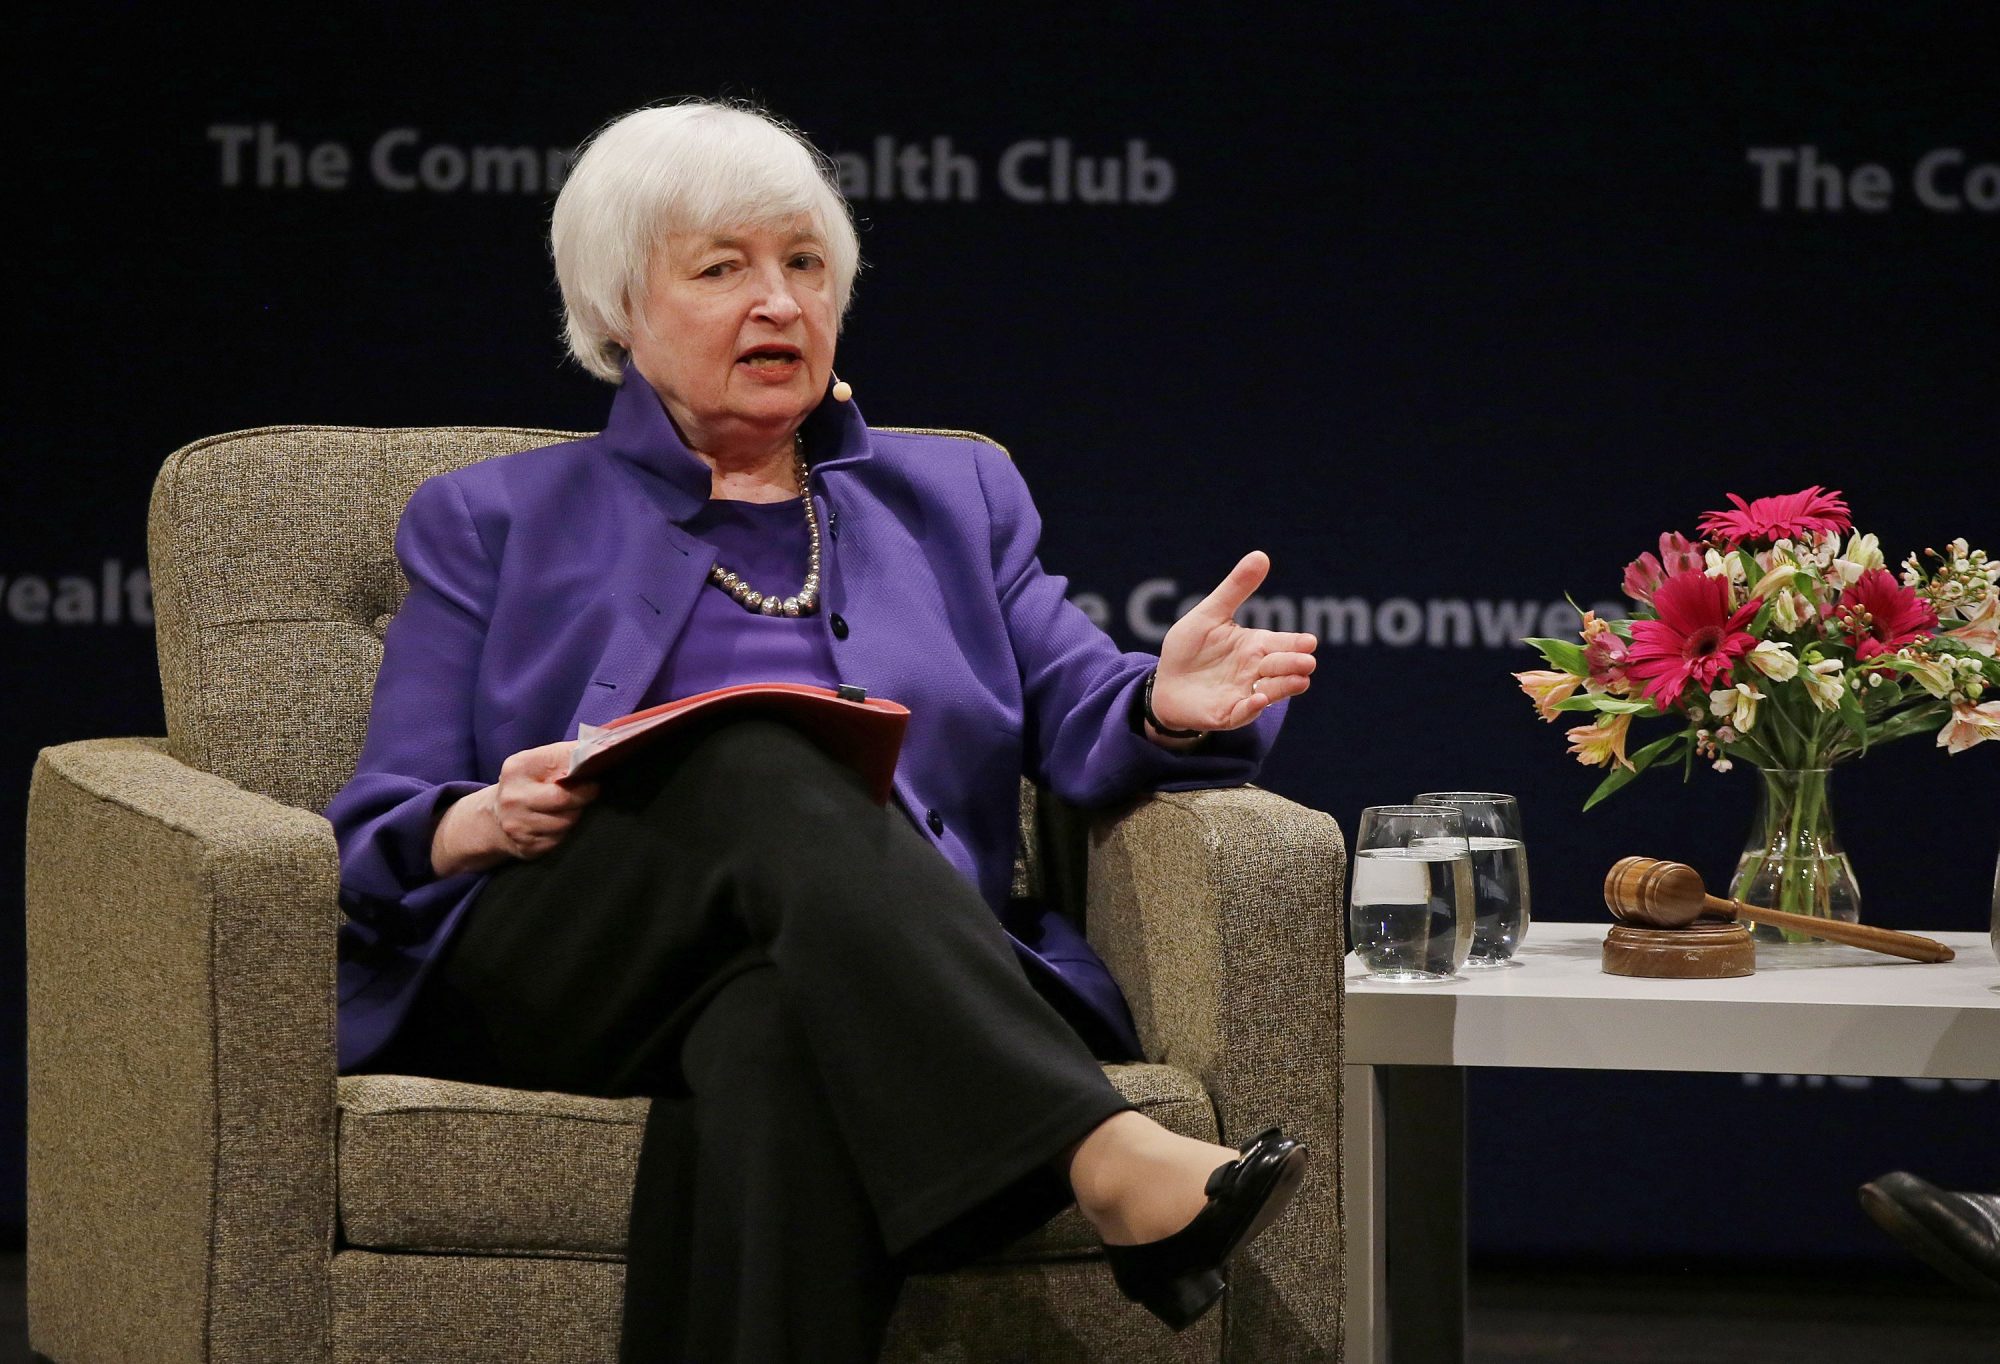 La jefa de la Reserva de Federal, Janet Yellen, responde preguntas durante una reunión del Club Commonwealth en San Francisco (AP)